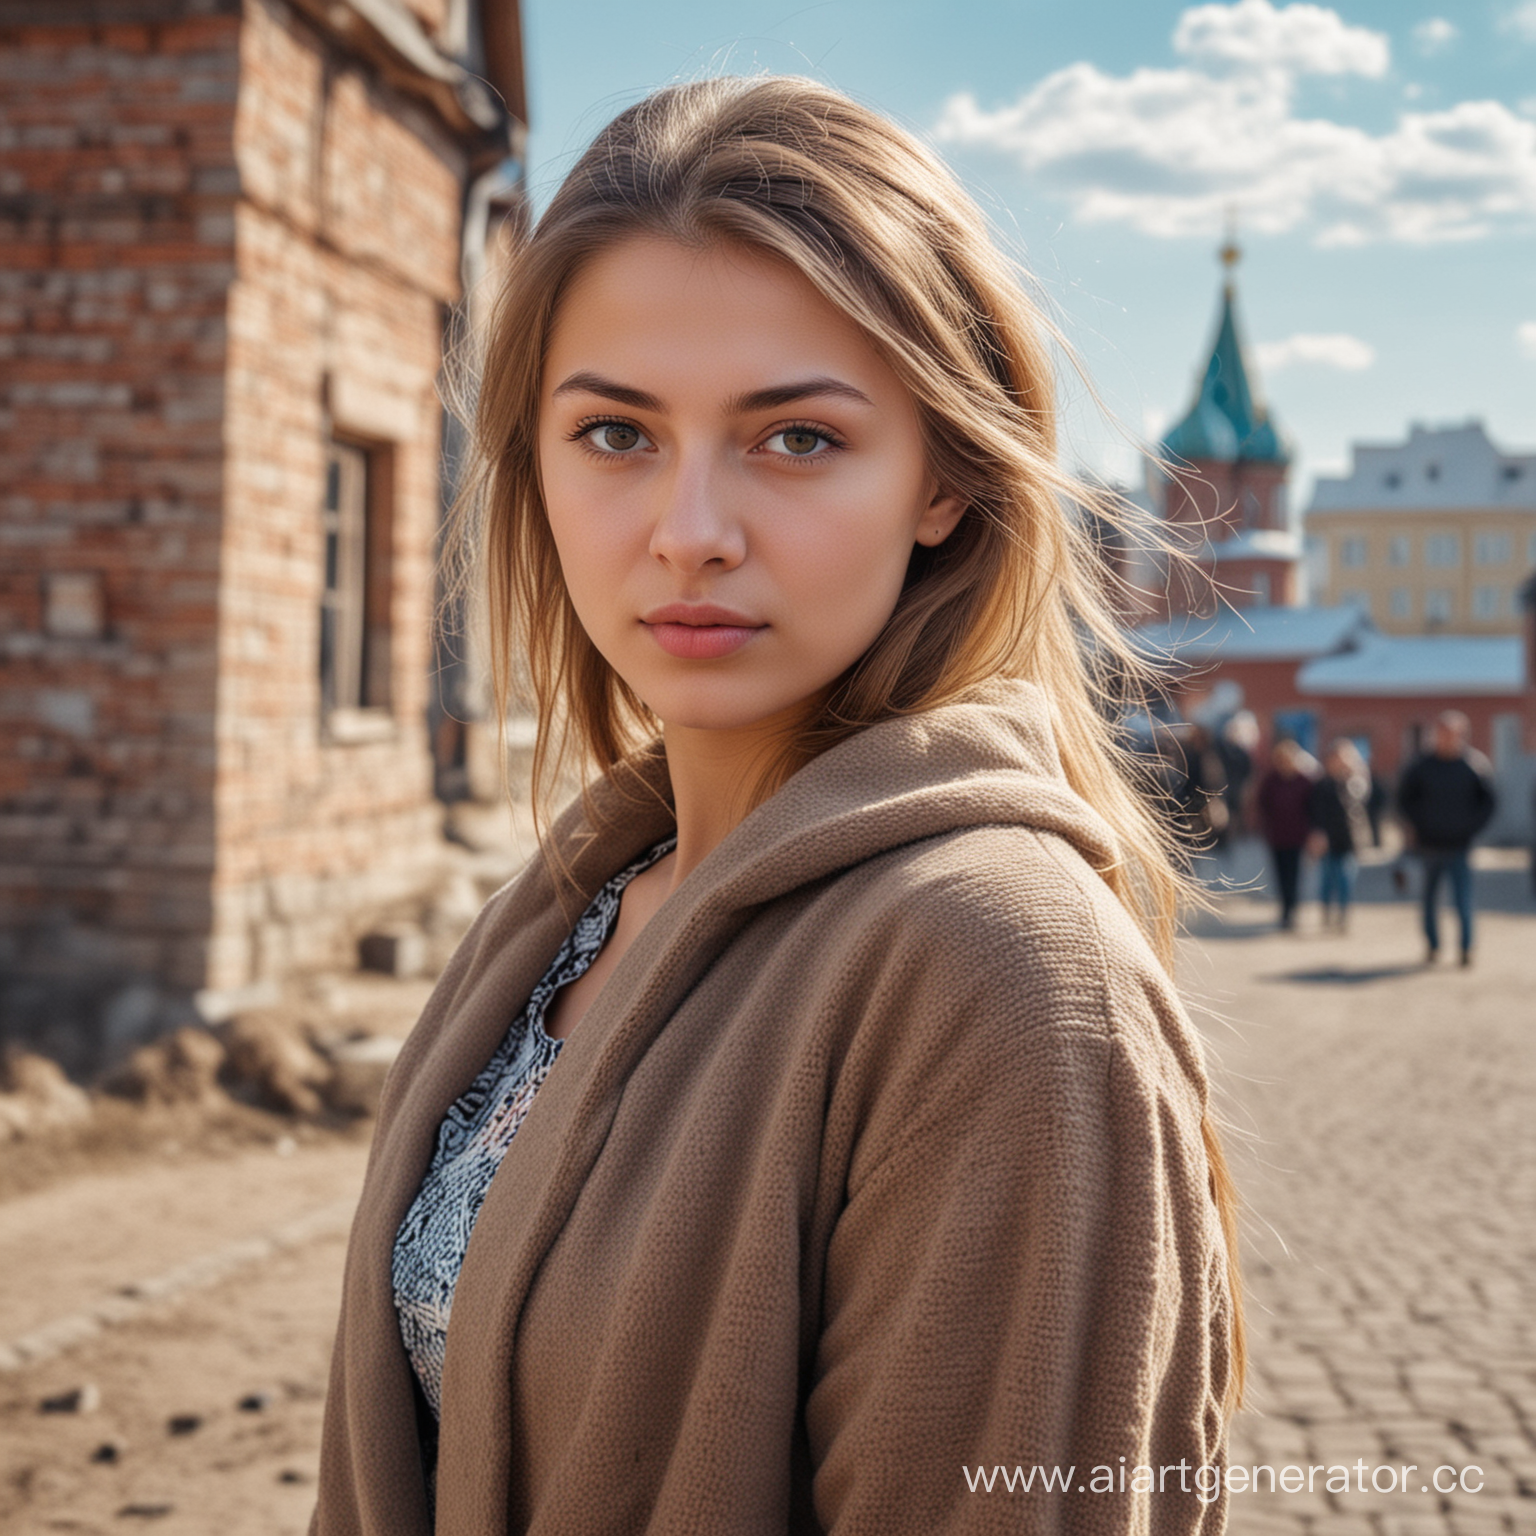 Русская девушка на фоне хрущёвок 